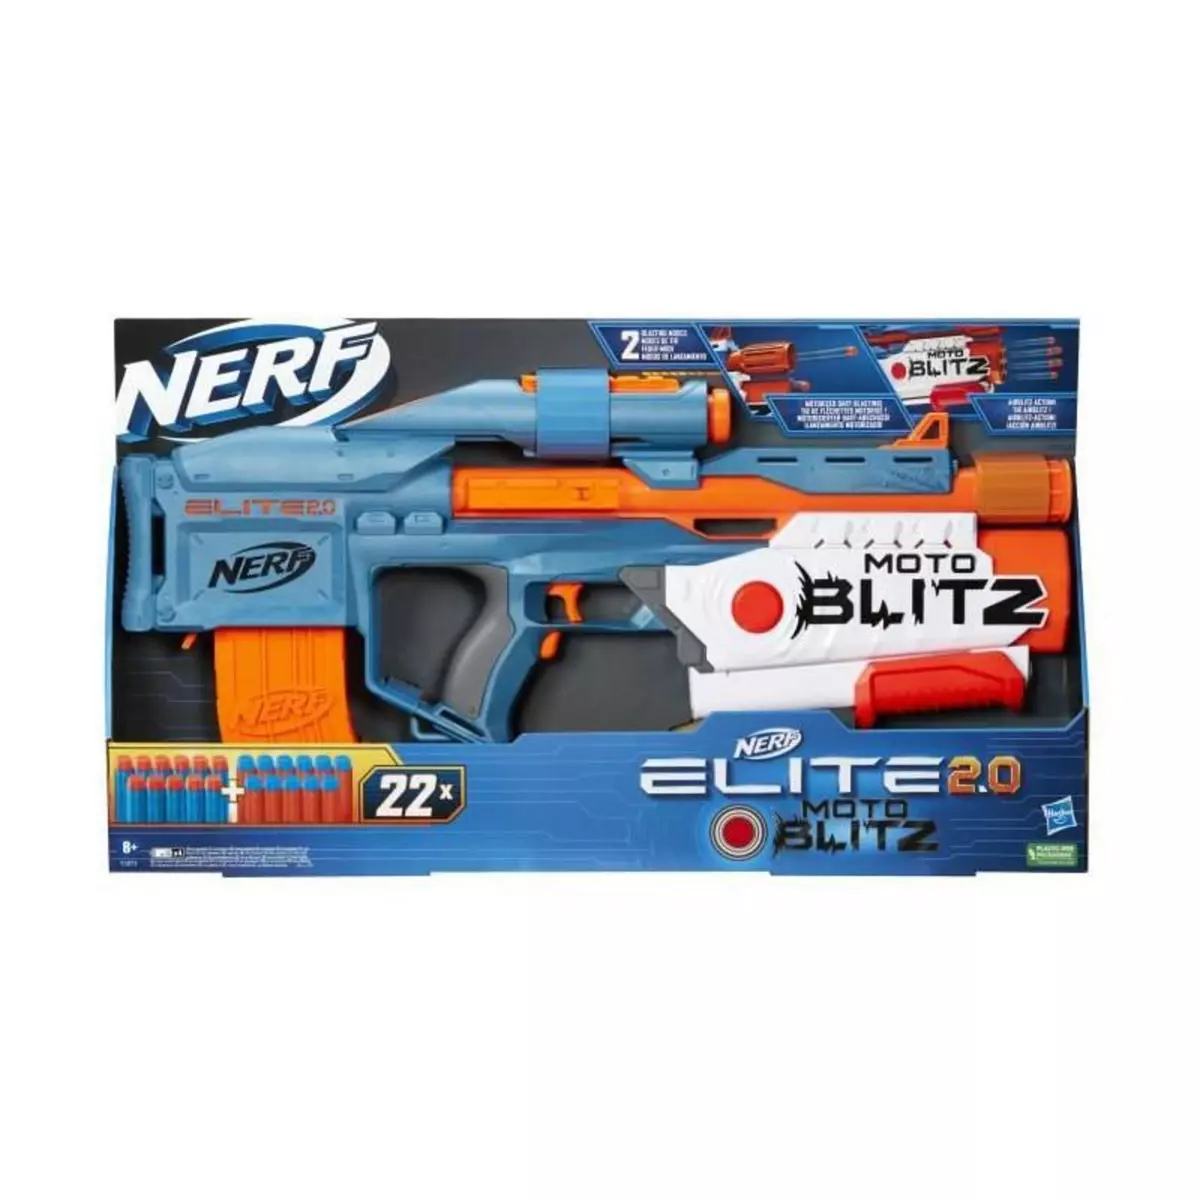 Nerf Nerf Elite 2.0 Motoblitz